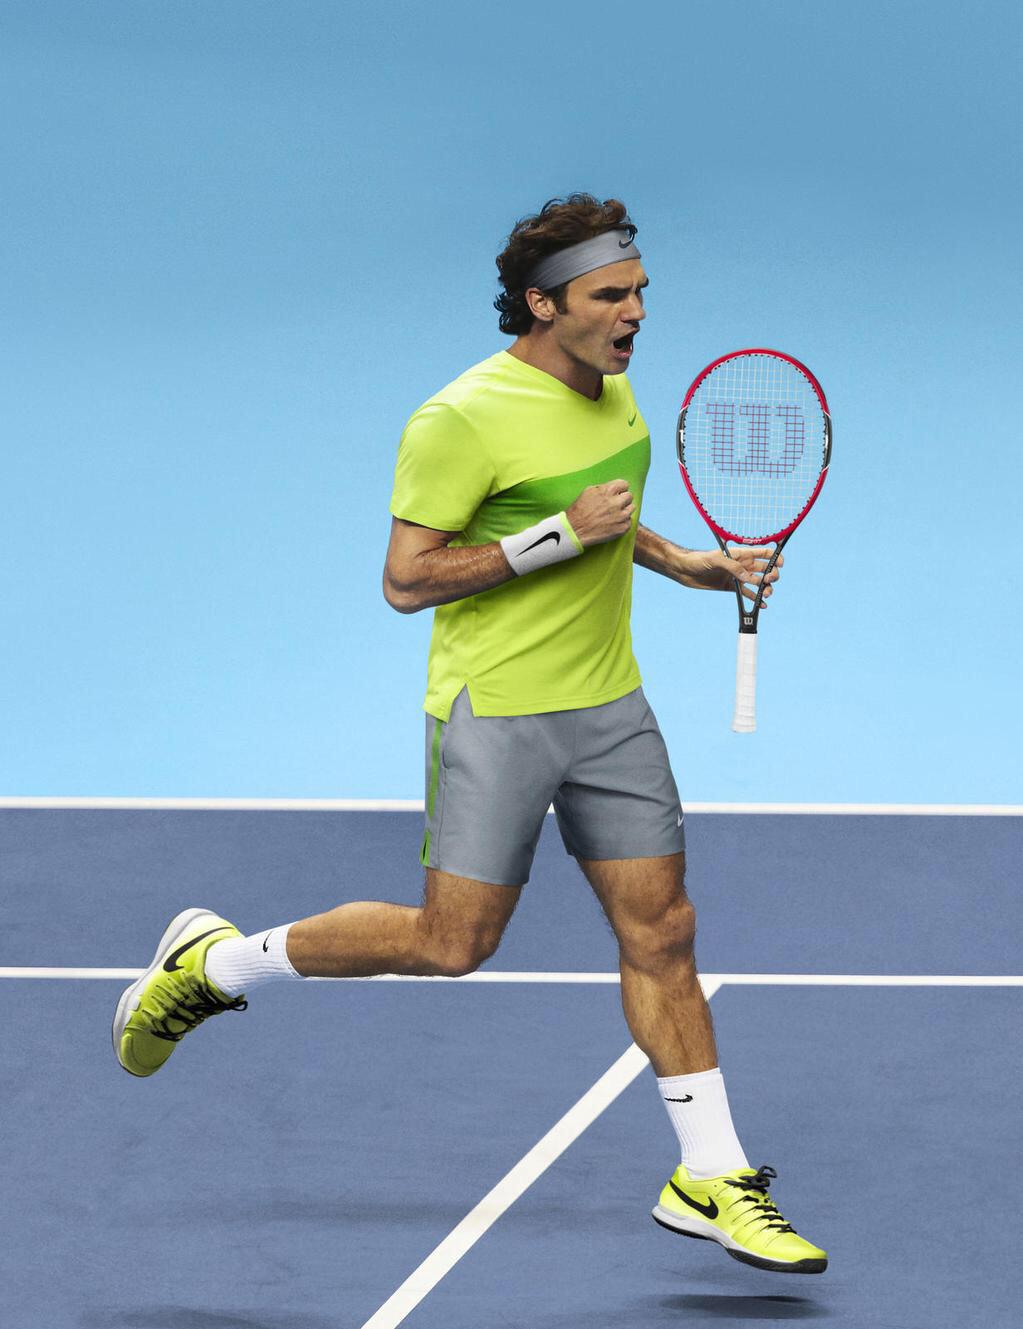 beschaving Delegeren Zijn bekend Go Roger Federer on Twitter: "Roger Federer's Australian Open 2015 Nike  Outfit - http://t.co/q4amFBxTkP #AusOpen http://t.co/Of7cpvHzwg" / X